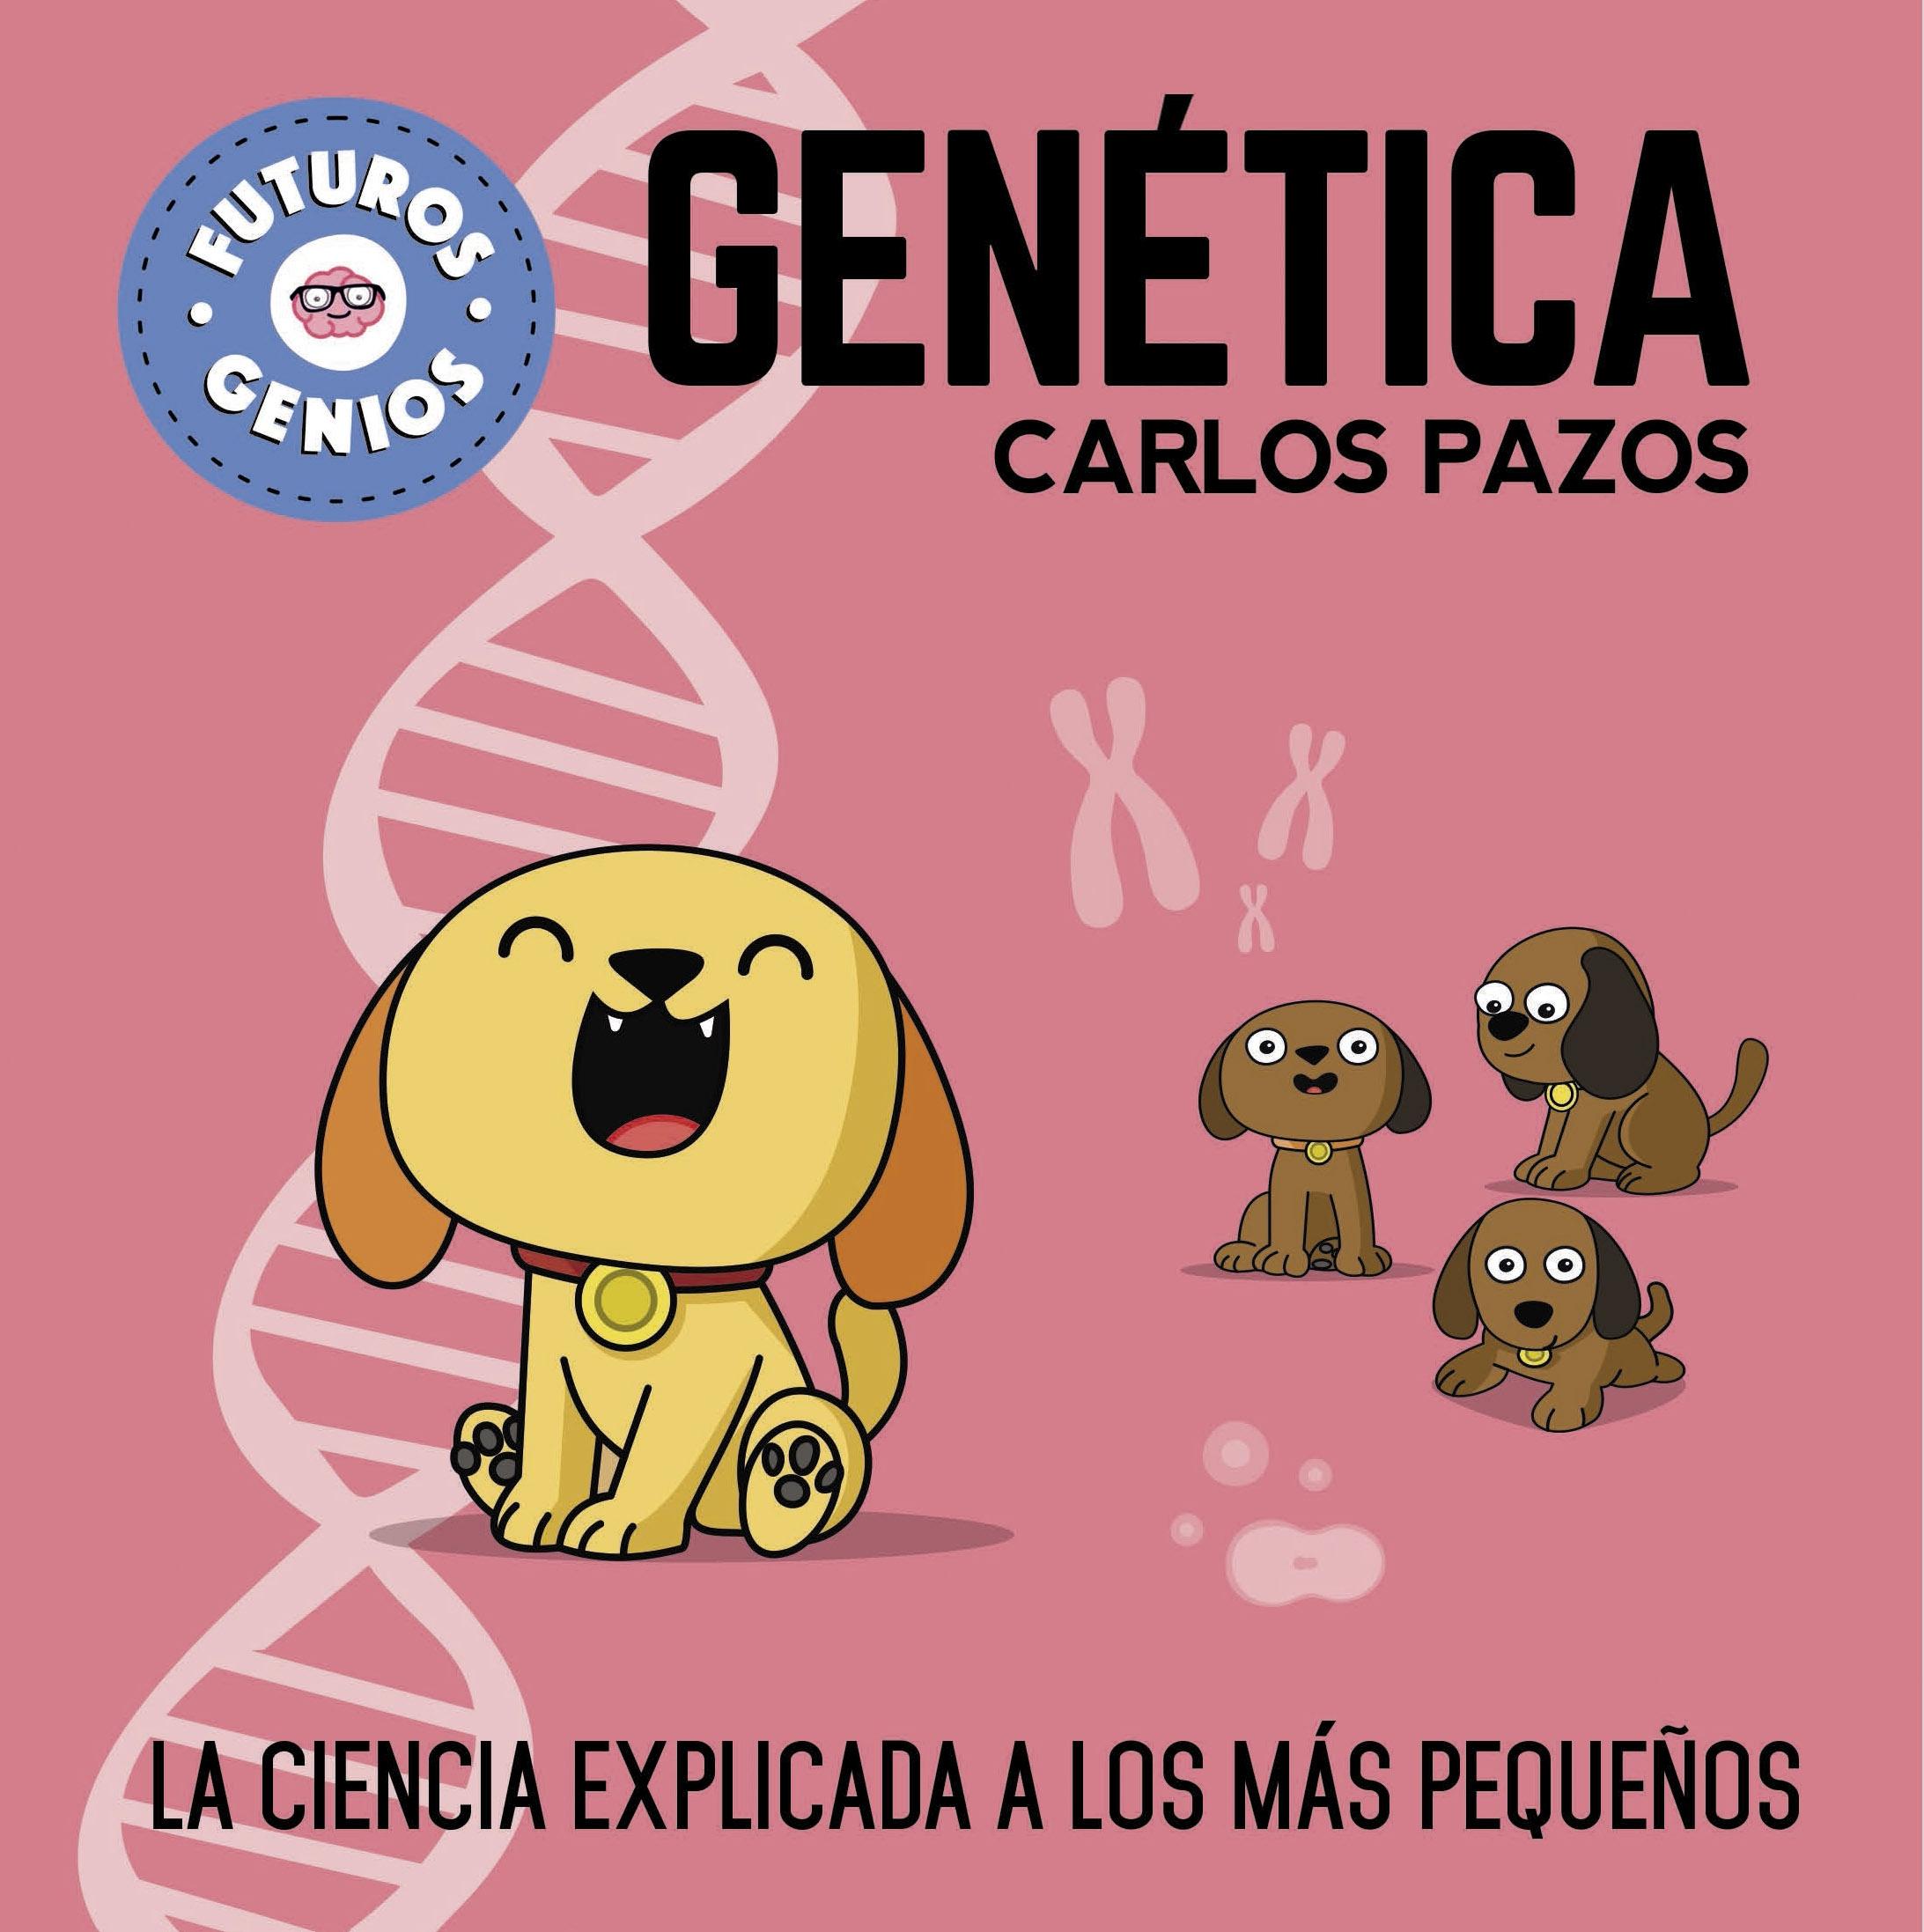 Genética (Futuros Genios) "La Ciencia Explicada a los Más Pequeños"